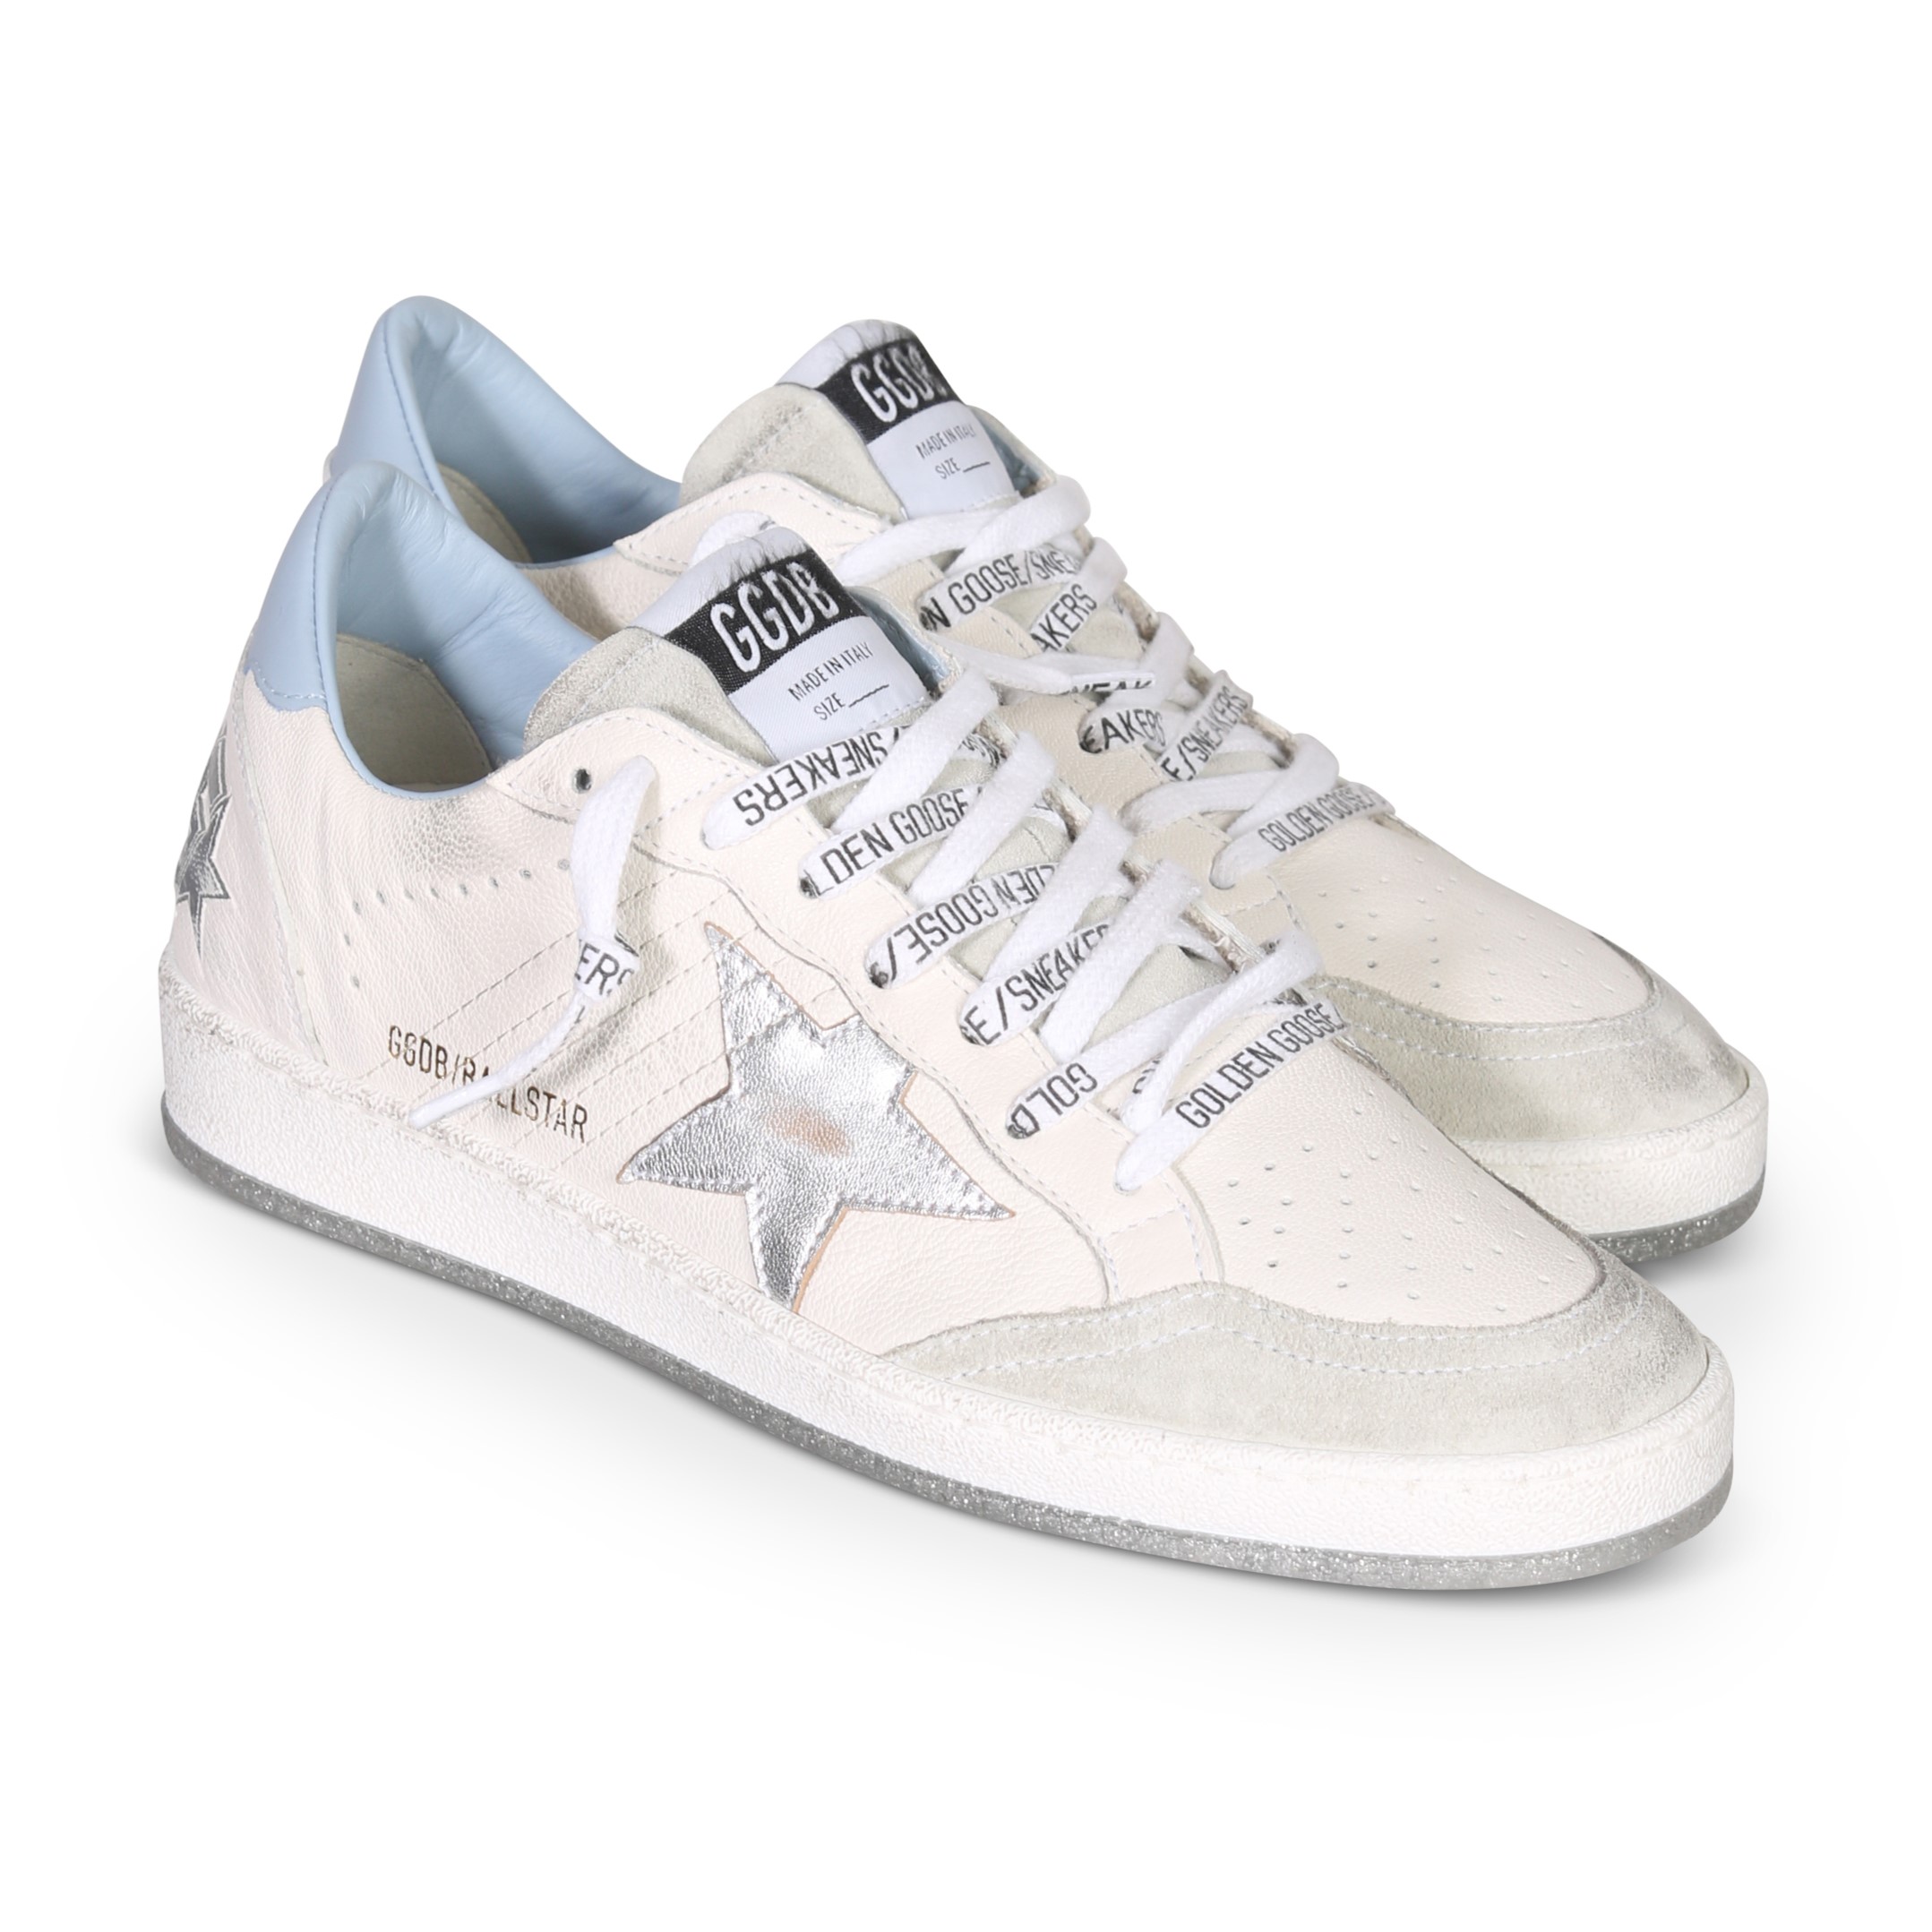 GOLDEN GOOSE Sneaker Ballstar in White/Light Blue/Silver 40